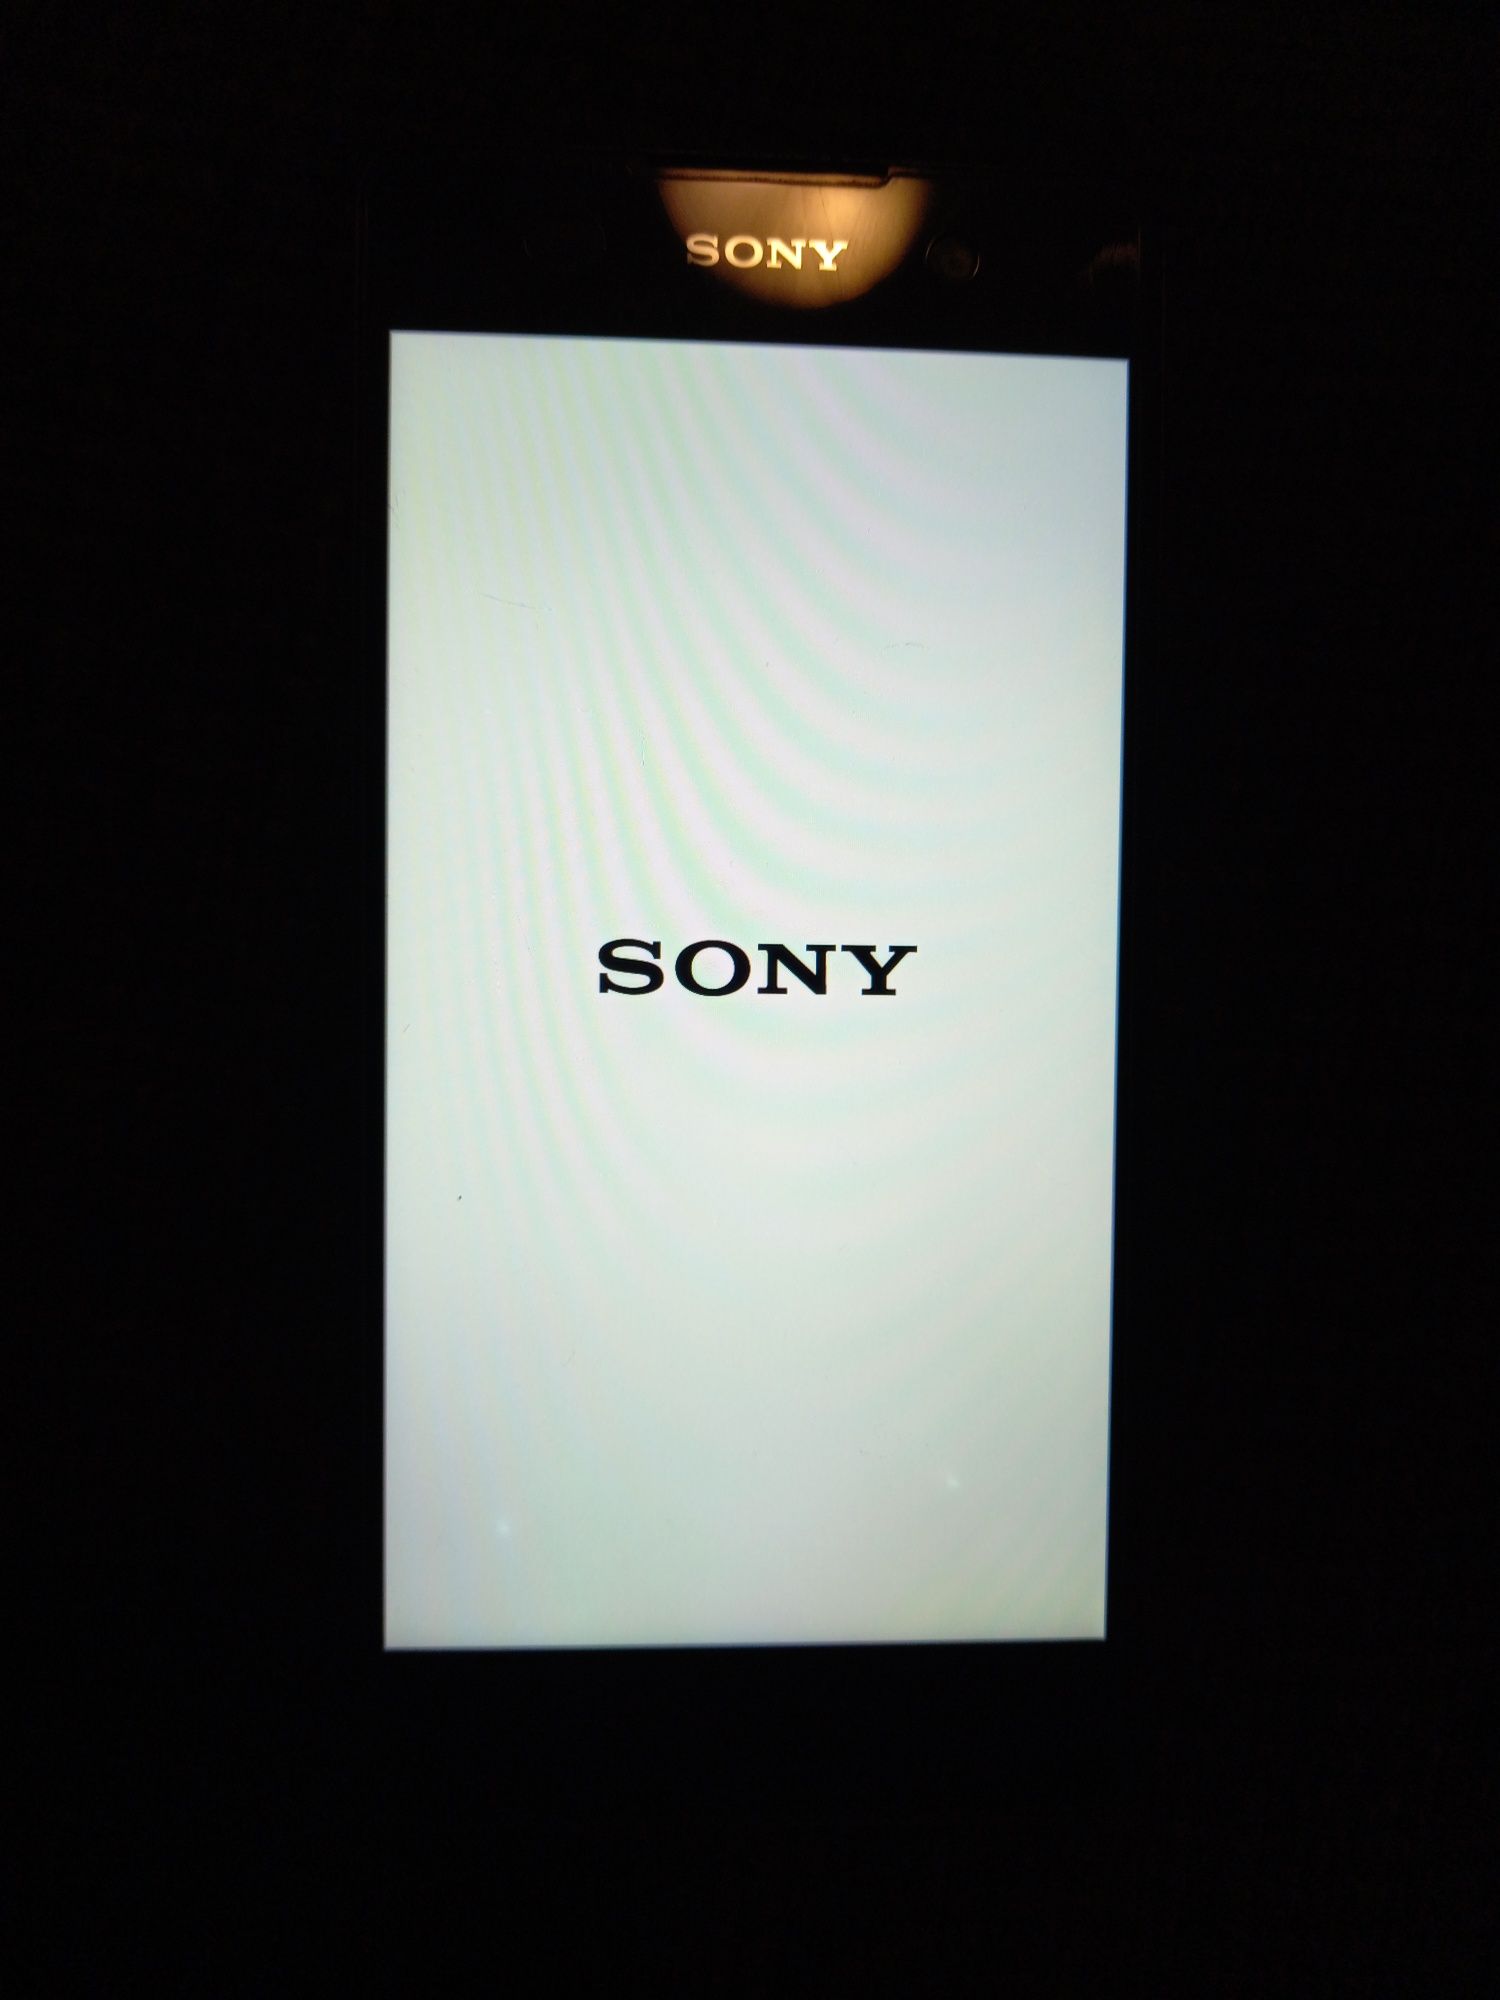 Sony Xperia E5 original